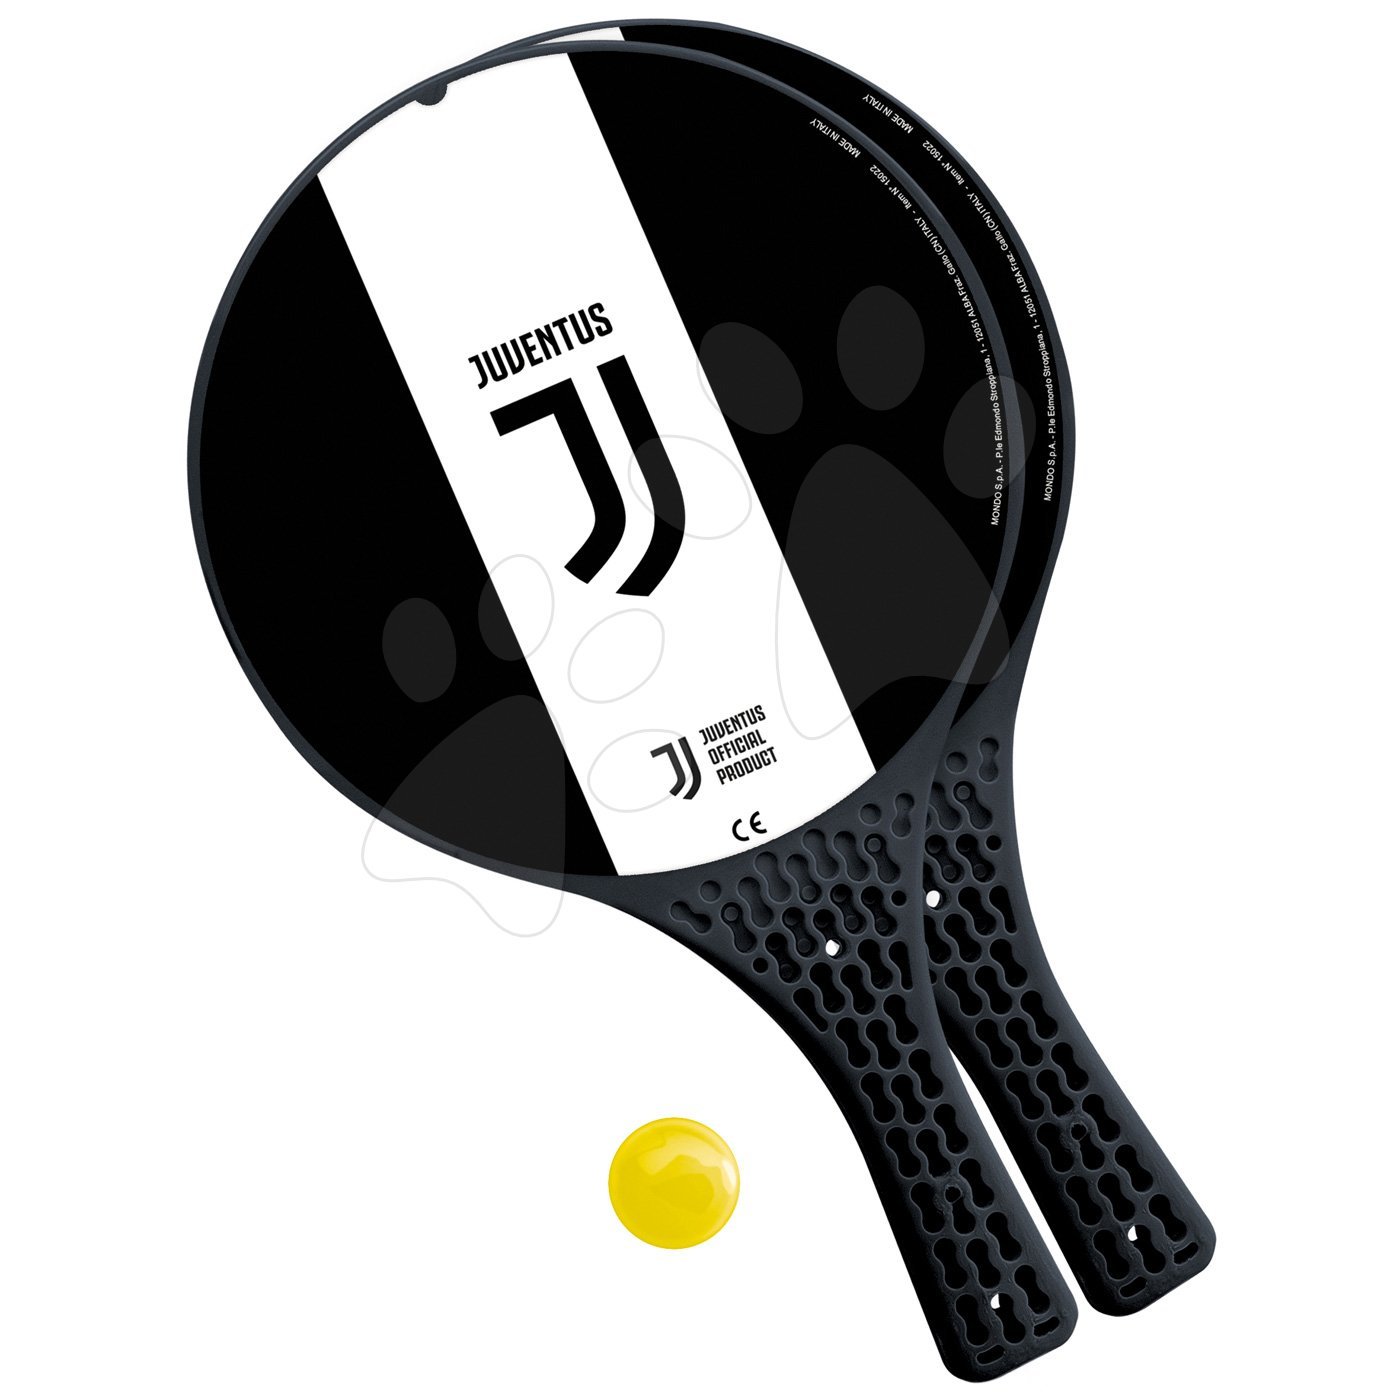 Mondo tenisz szett FC Juventus 2 ütővel és labdával 15022 fekete-fehér